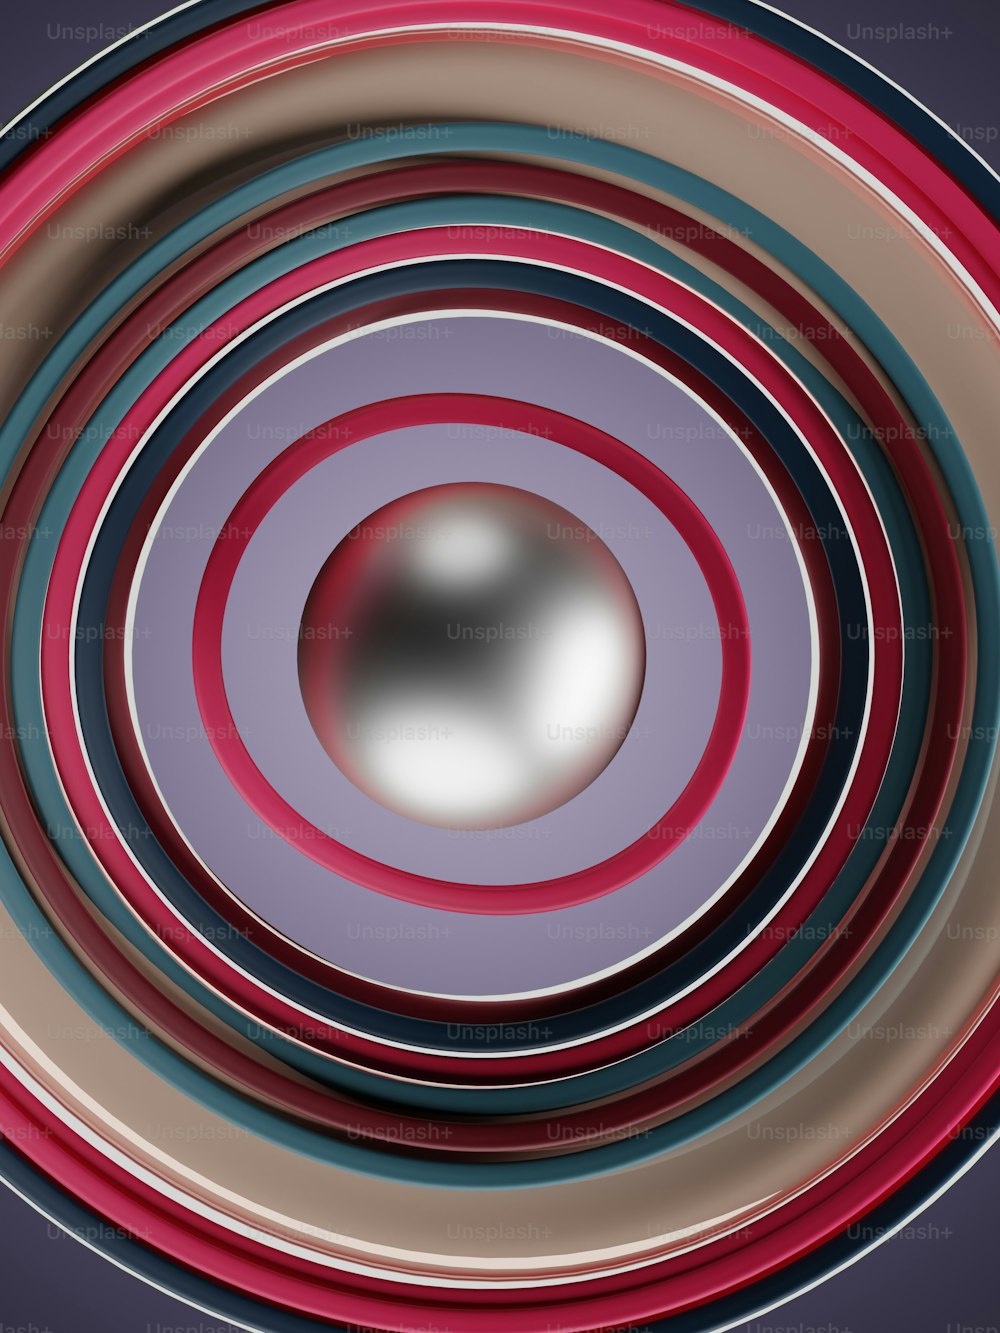 Una imagen de un objeto circular con un fondo borroso